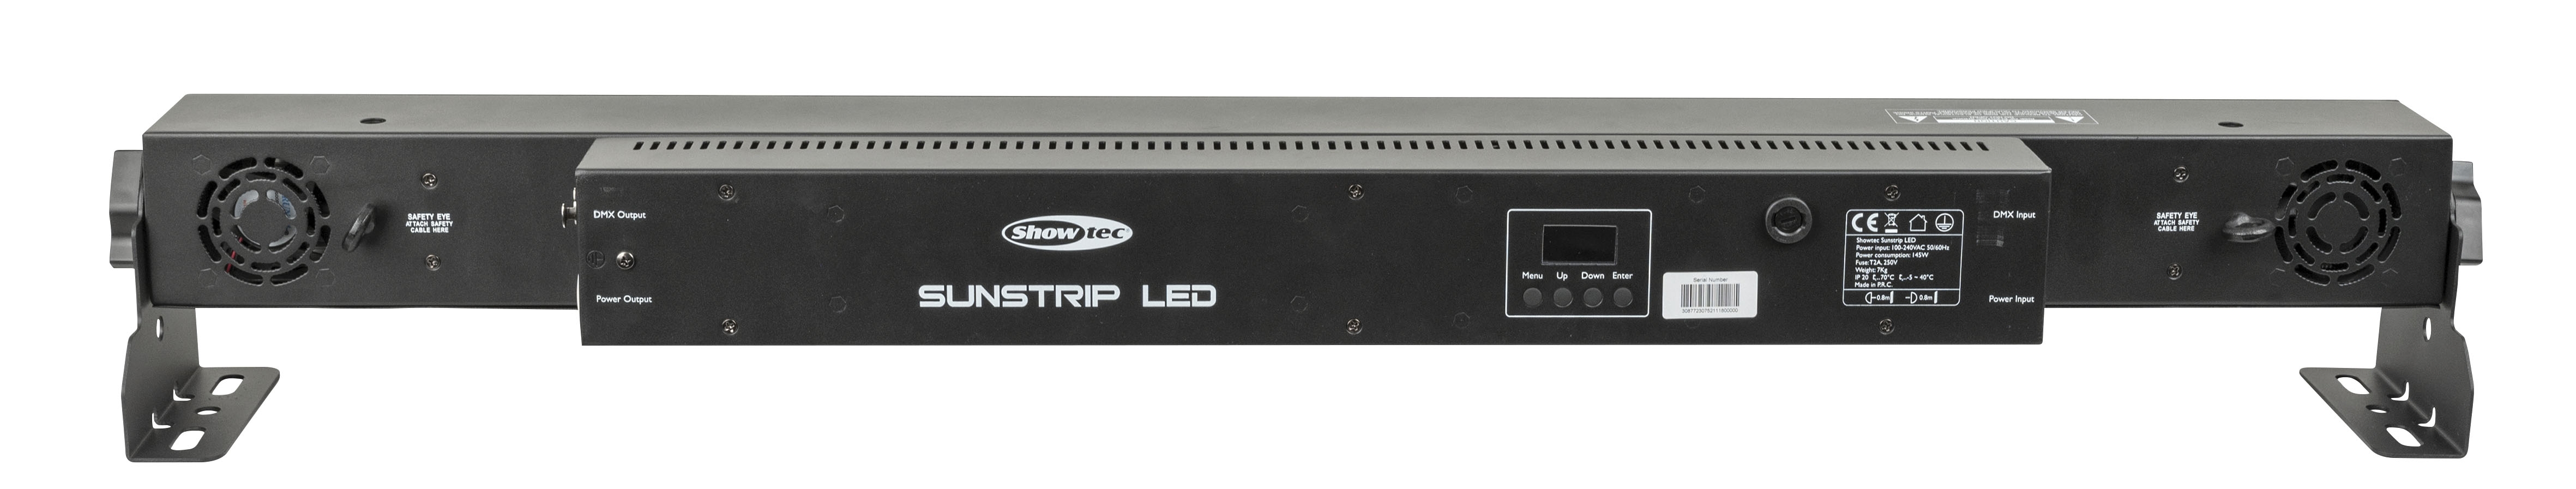 Showtec Sunstrip LED mit 10x14 Watt warmeißen LEDs